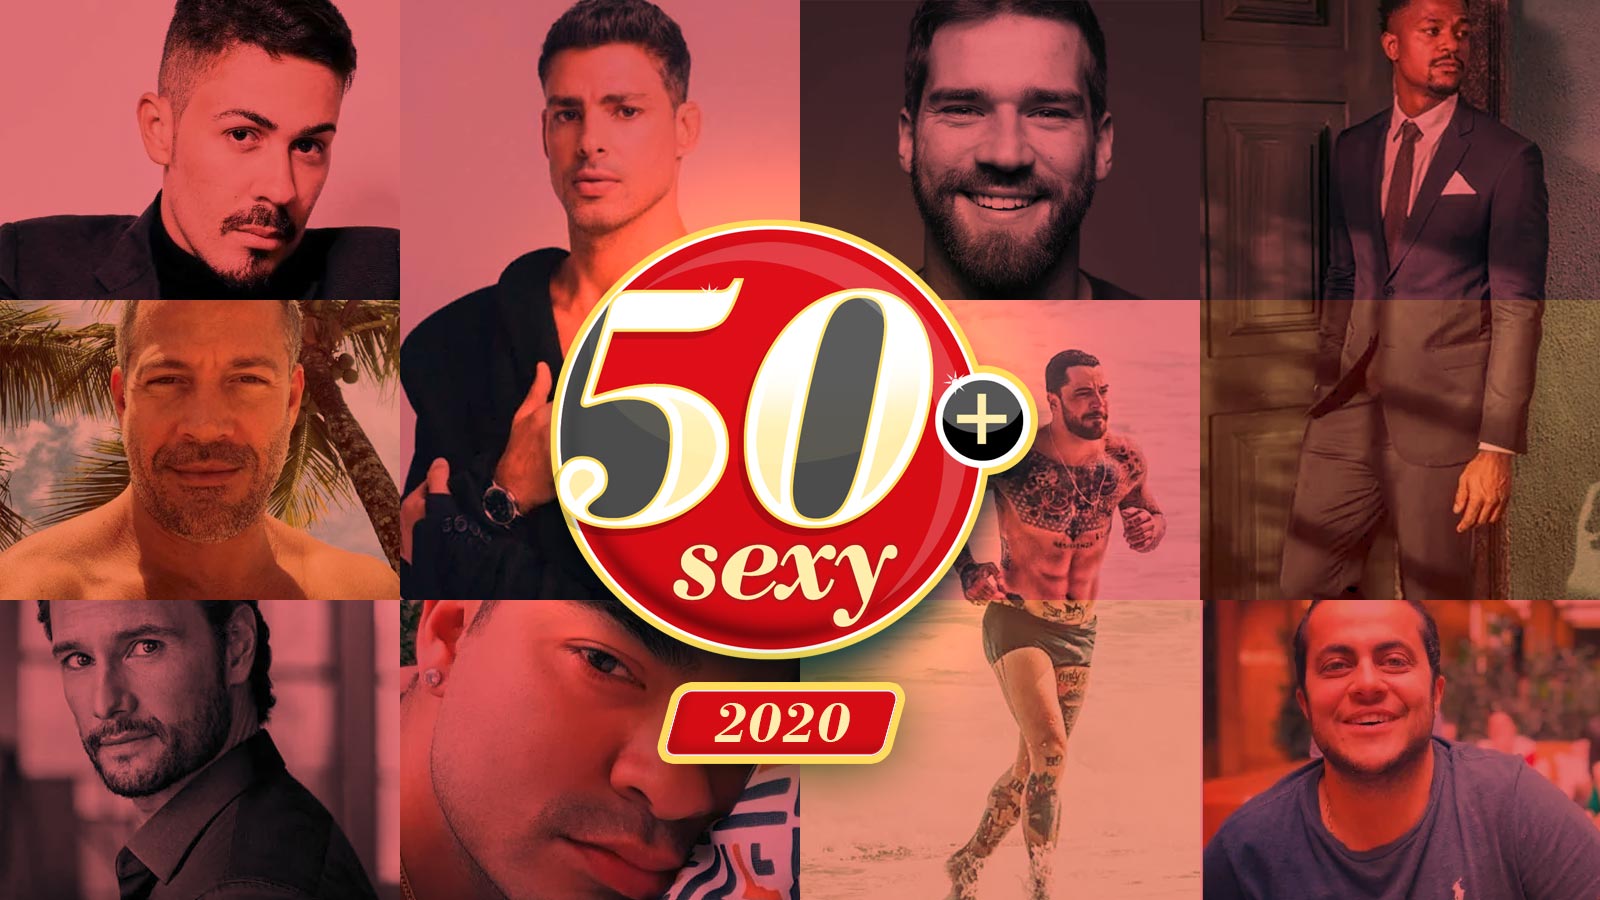 Os 50 mais sexy 2020